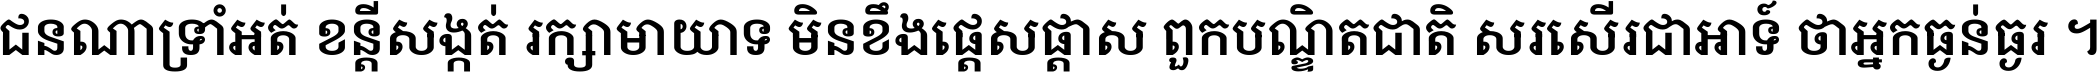 Noto Serif Khmer SemiBold